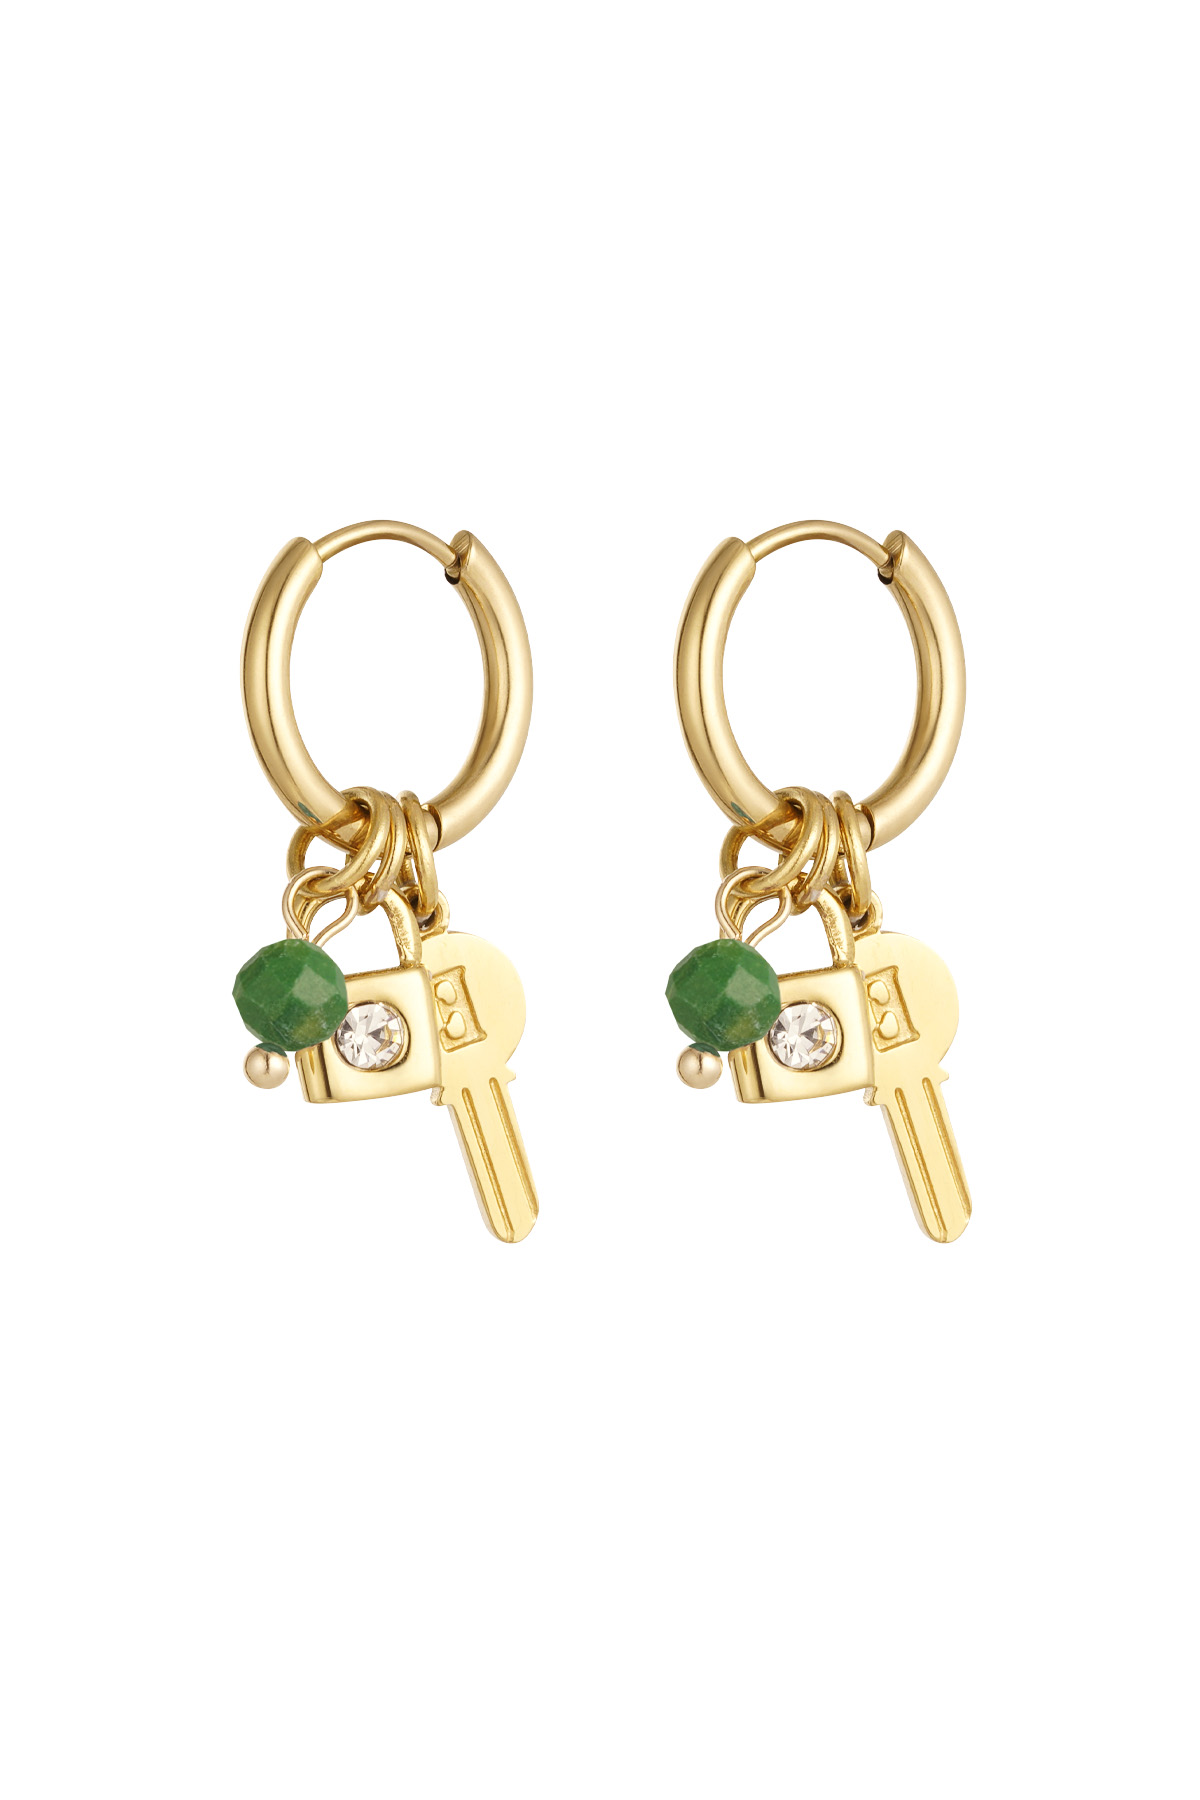 Boncuklu küpe anahtarı - altın/yeşil h5 